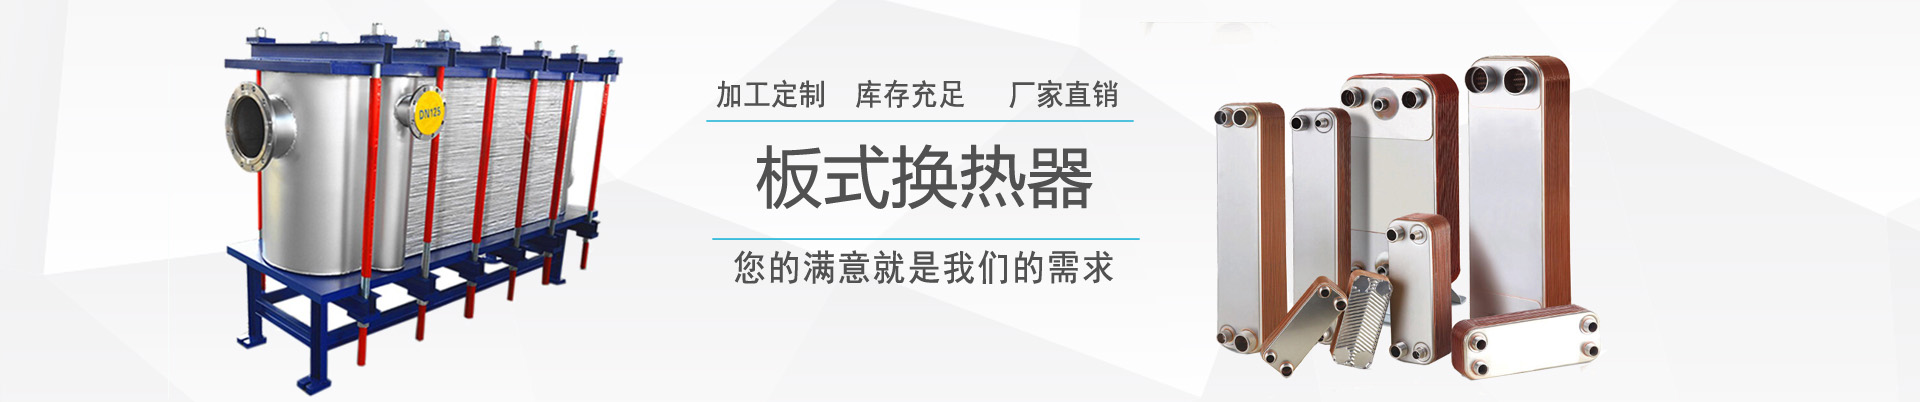 產品中心 - ,換熱器,板式換熱器,換熱器機組,上海將星化工設備有限公司